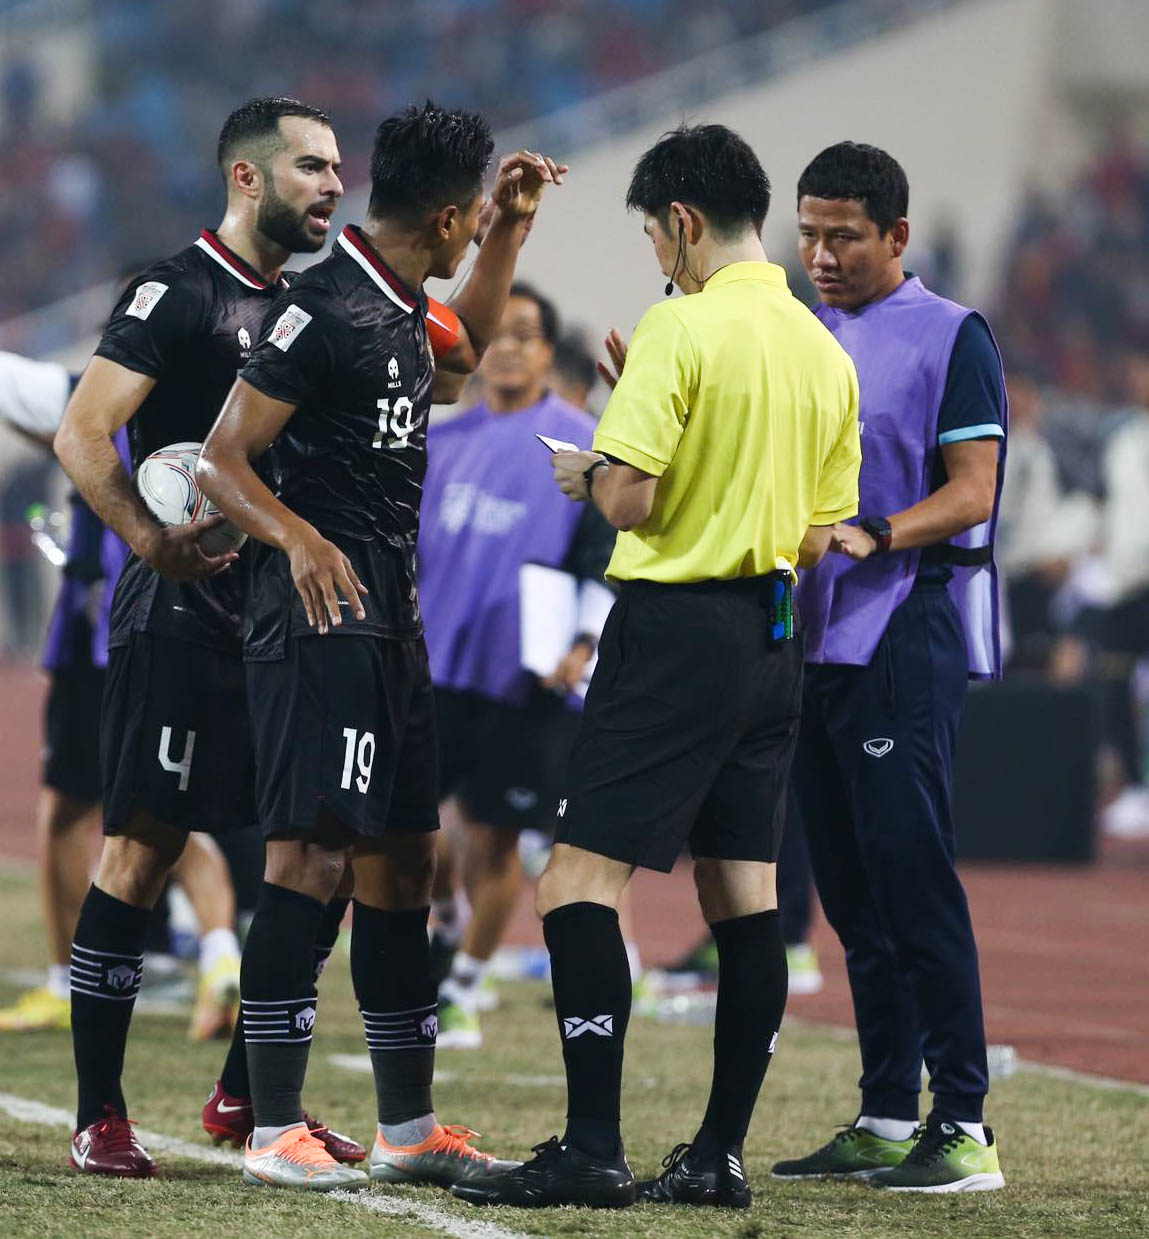 Văn Hậu nhận thẻ vàng tranh cãi, trợ lý Anh Đức bị cầu thủ Indonesia đẩy - Ảnh 4.